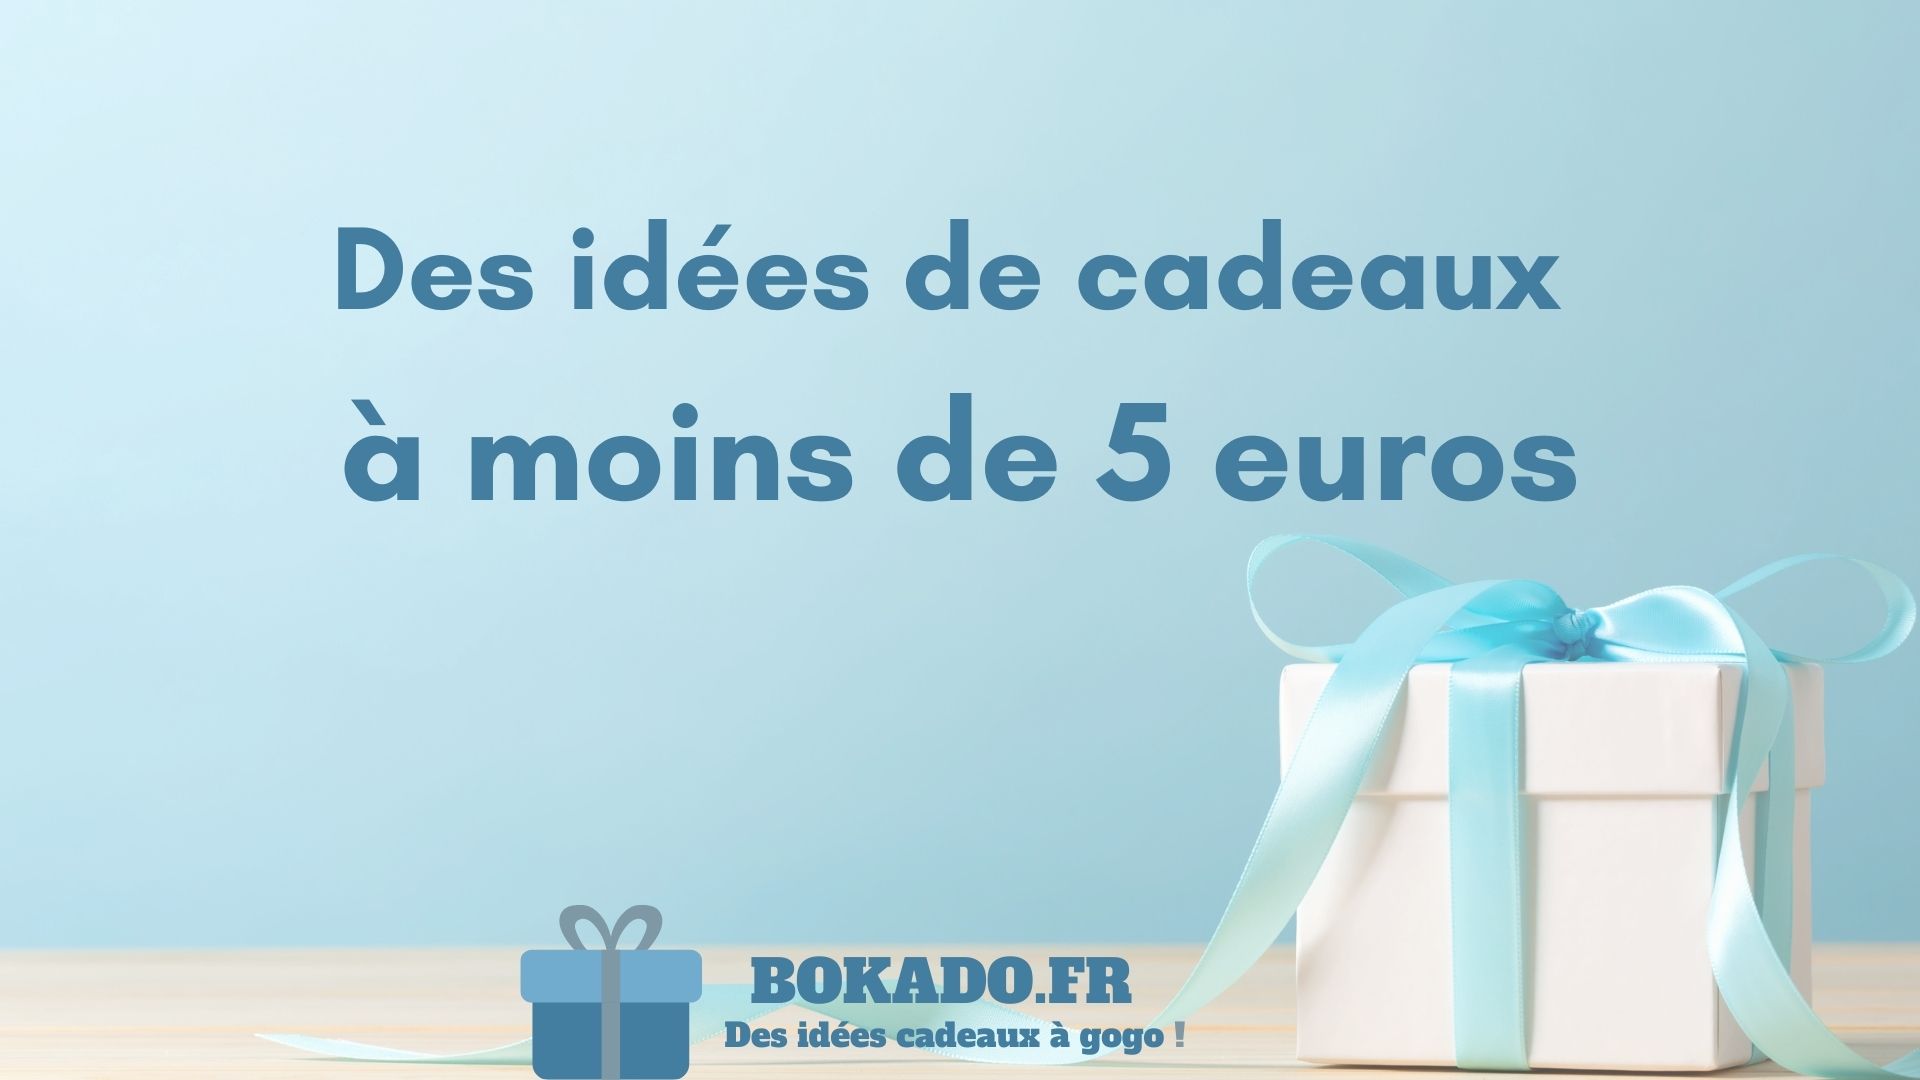 49 idées de cadeaux à moins de 5 euros 